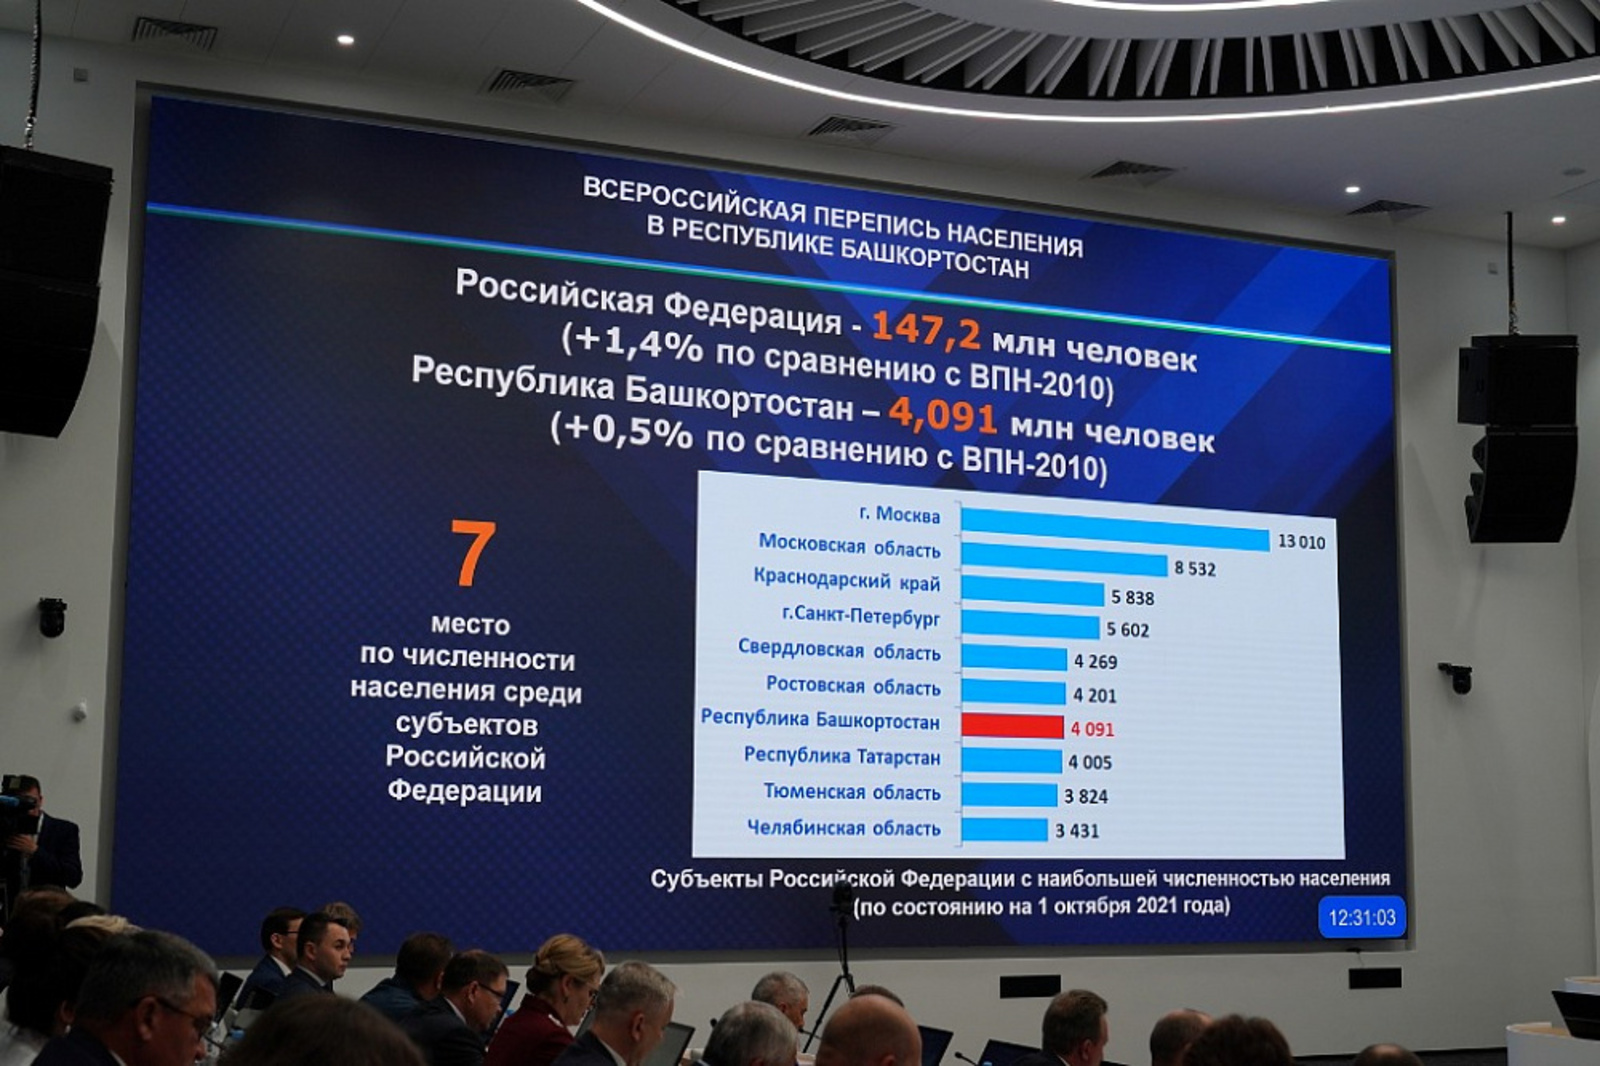 Башкортостан – лидер в ПФО по численности населения